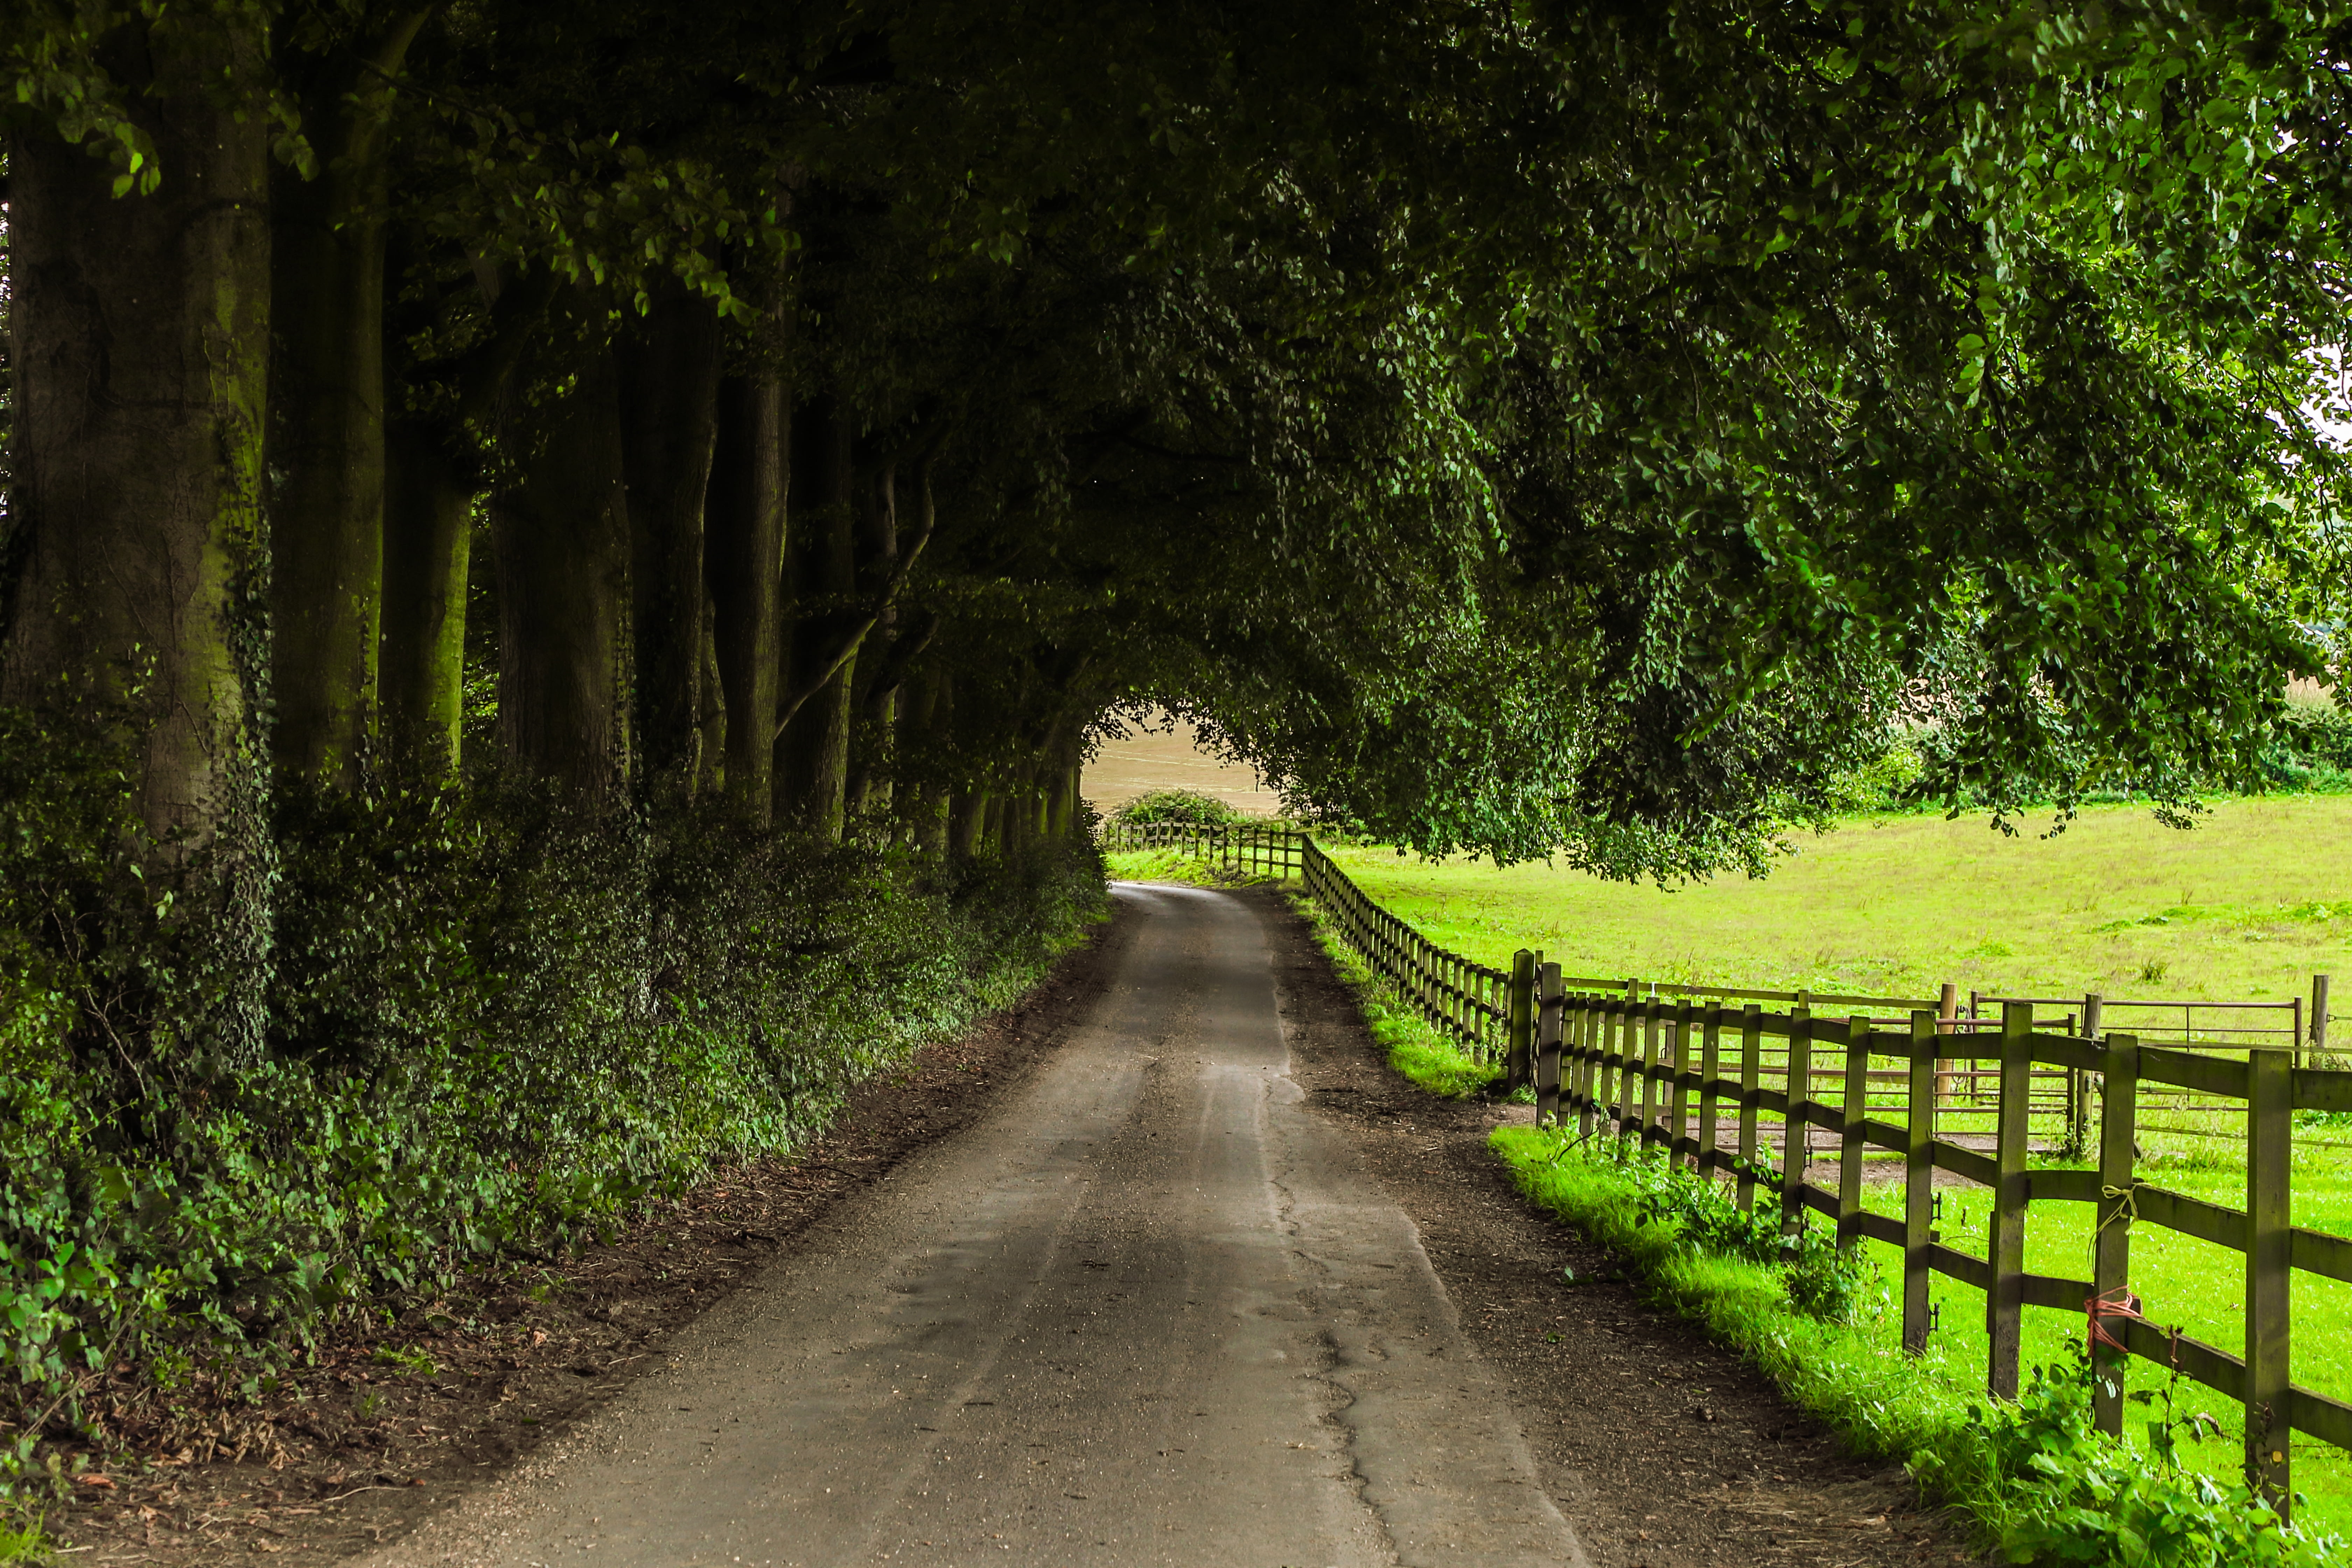 Countryside walks. Природа Англии. Зеленая дорога. Природа Англии фото. Британия природа дороги.